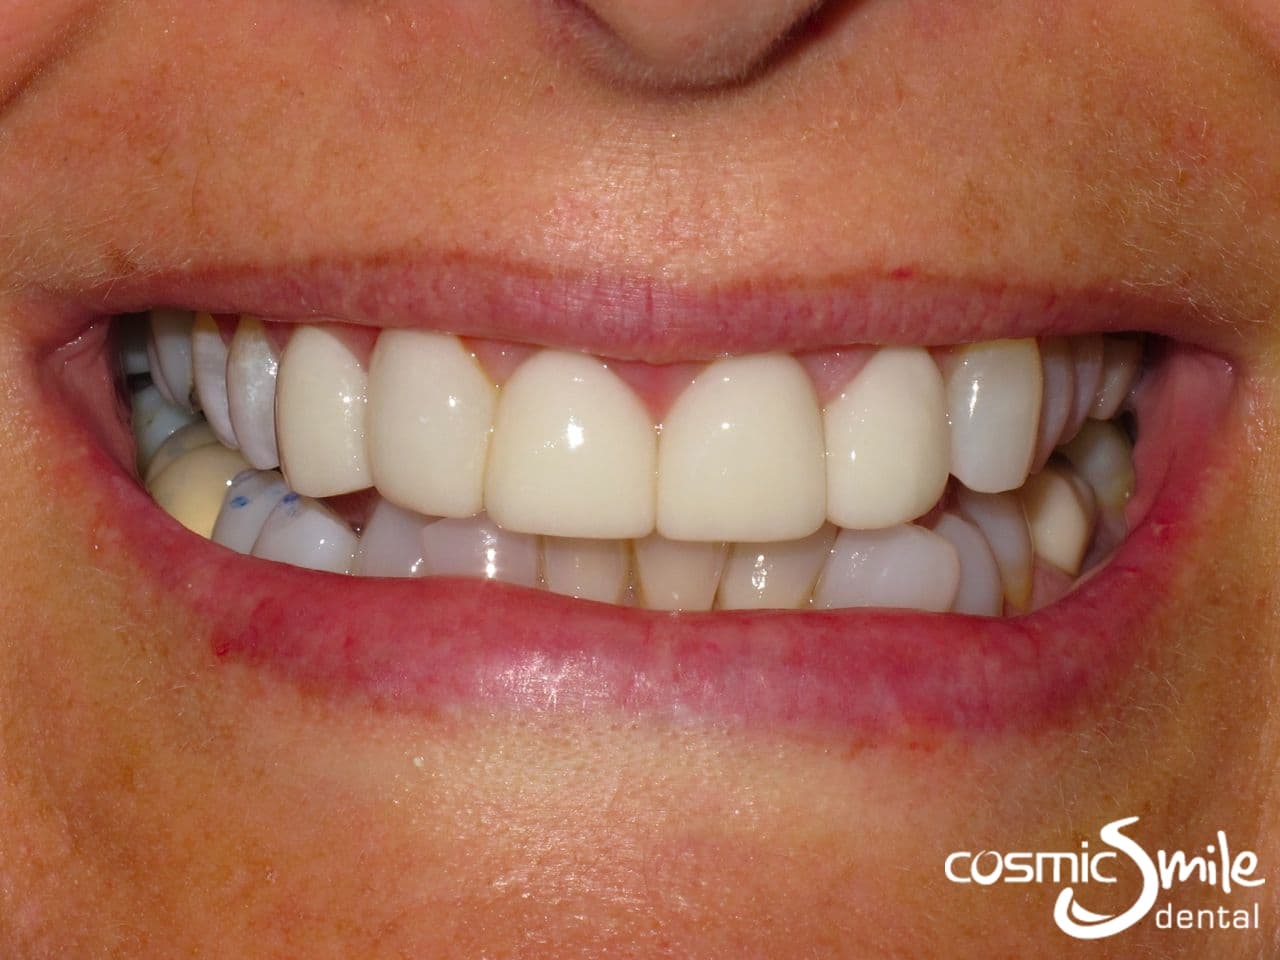 Lumineers – Misaligned front teeth